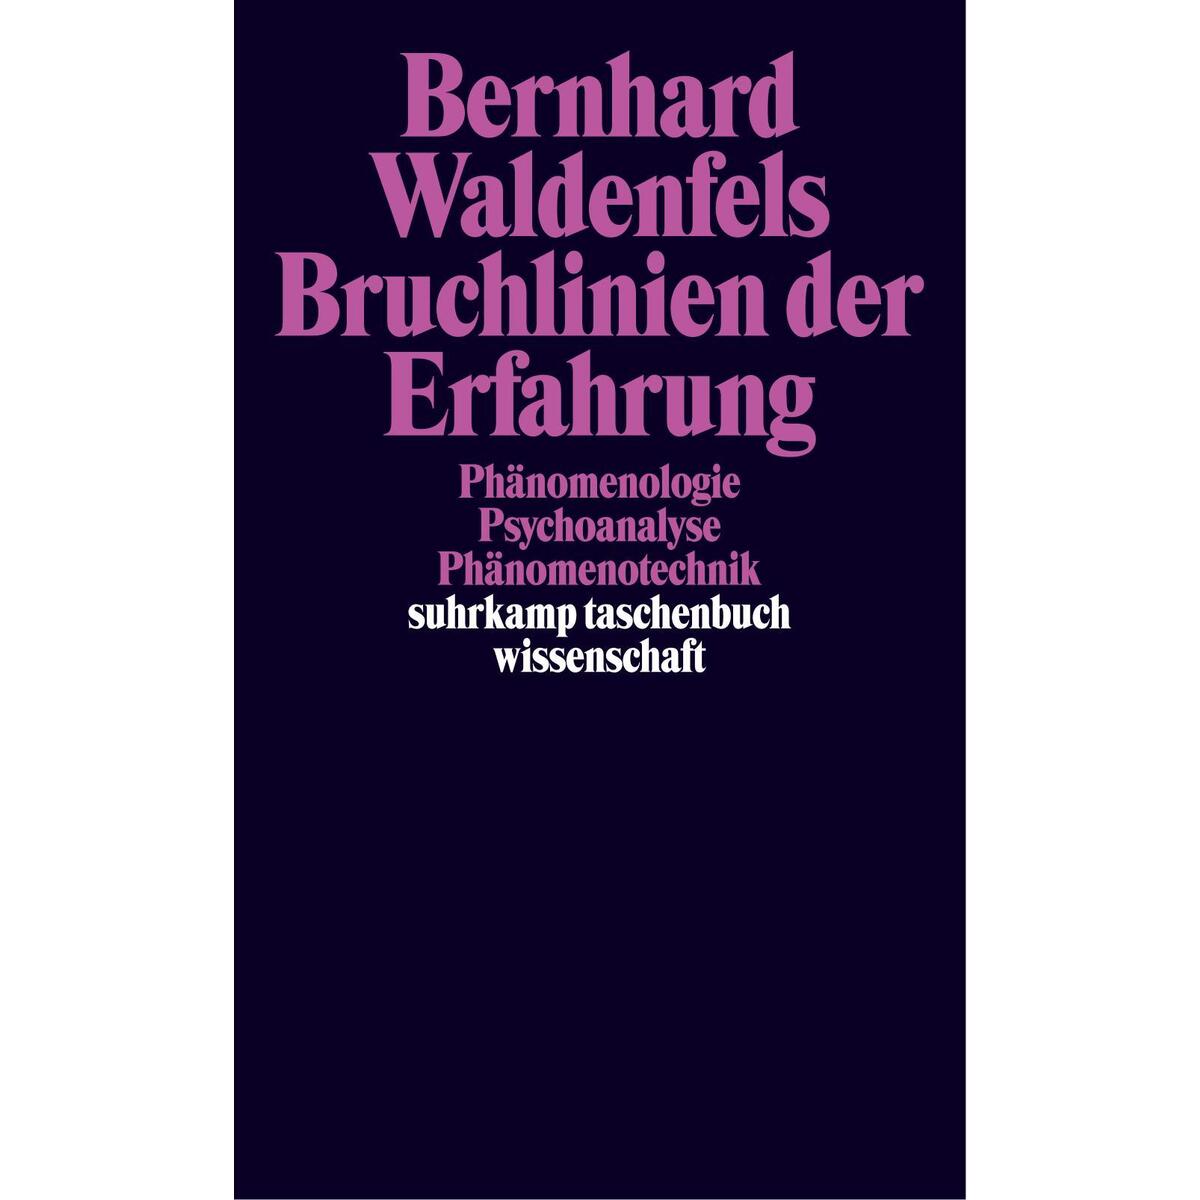 Bruchlinien der Erfahrung von Suhrkamp Verlag AG